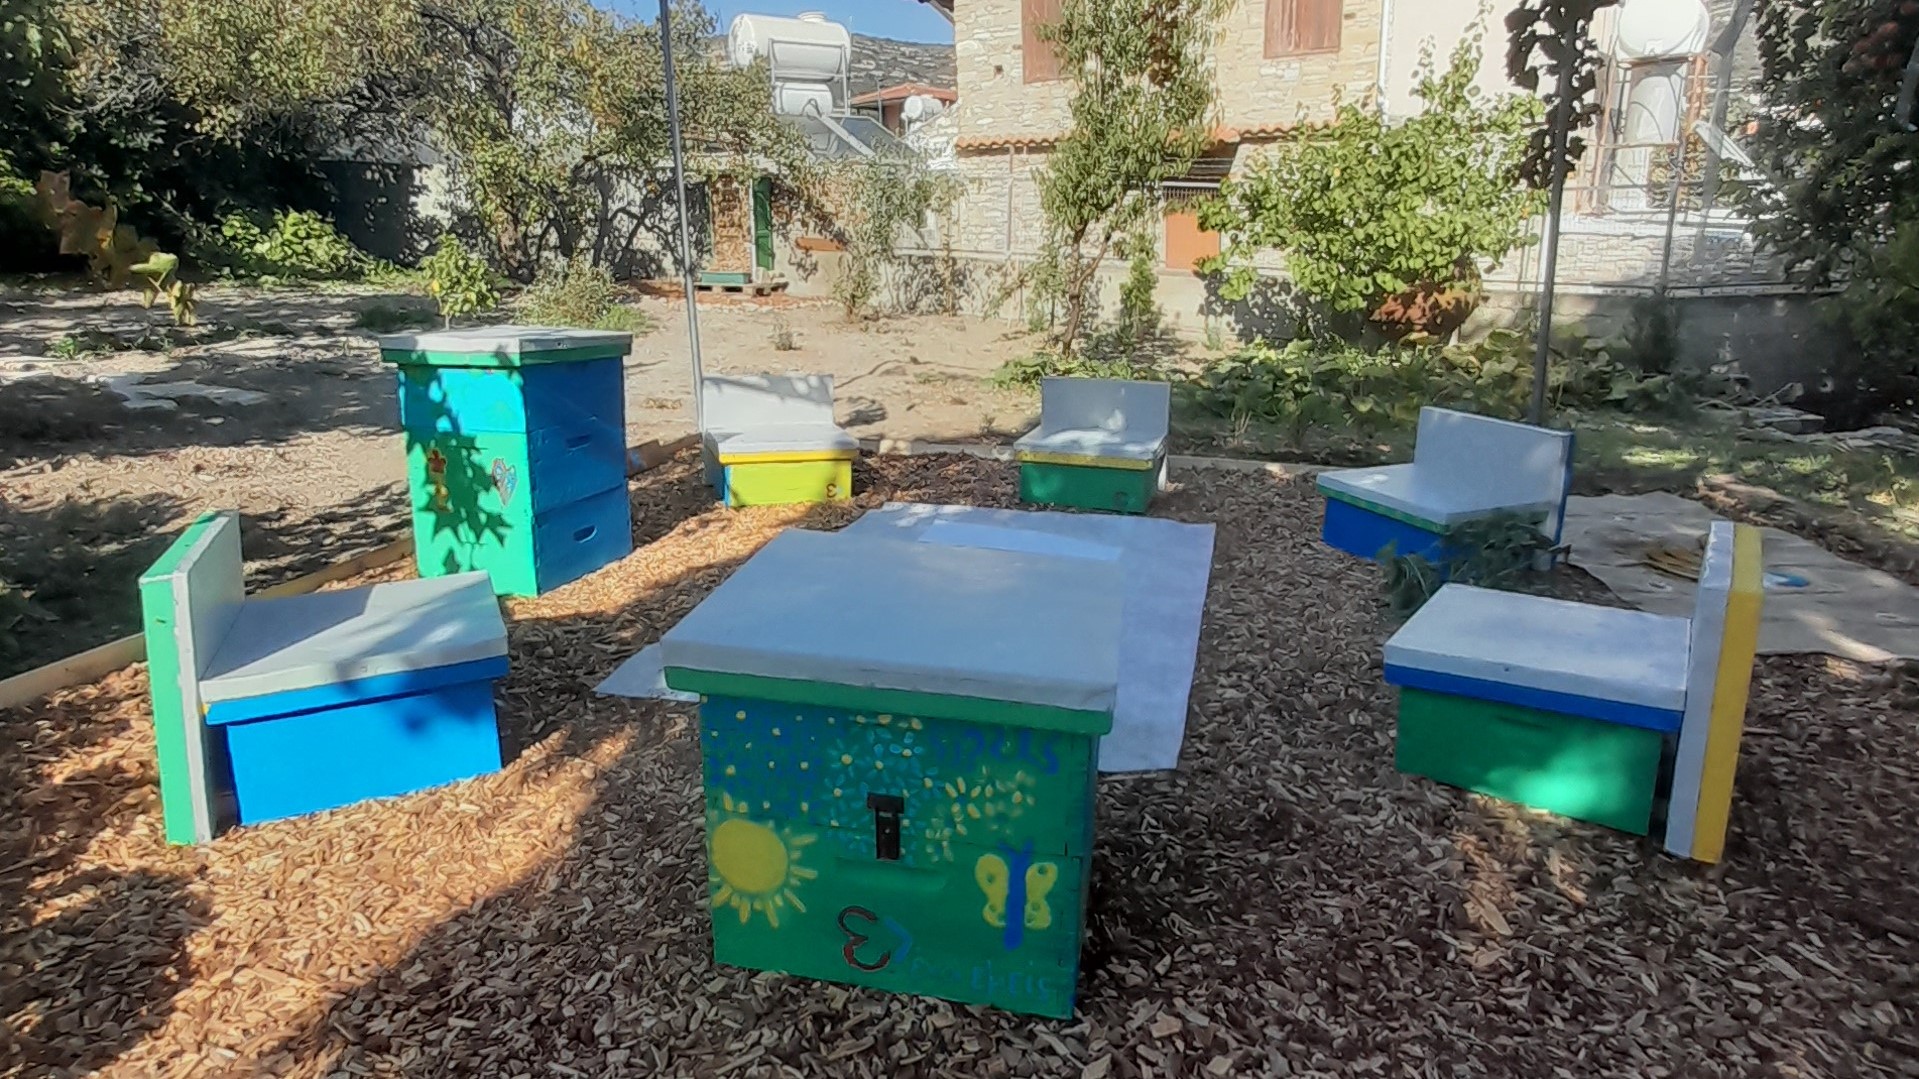 Ο νέος μελισσοφιλικός κήπος στην κοινότητα του Κάτω Δρύ (φώτο)